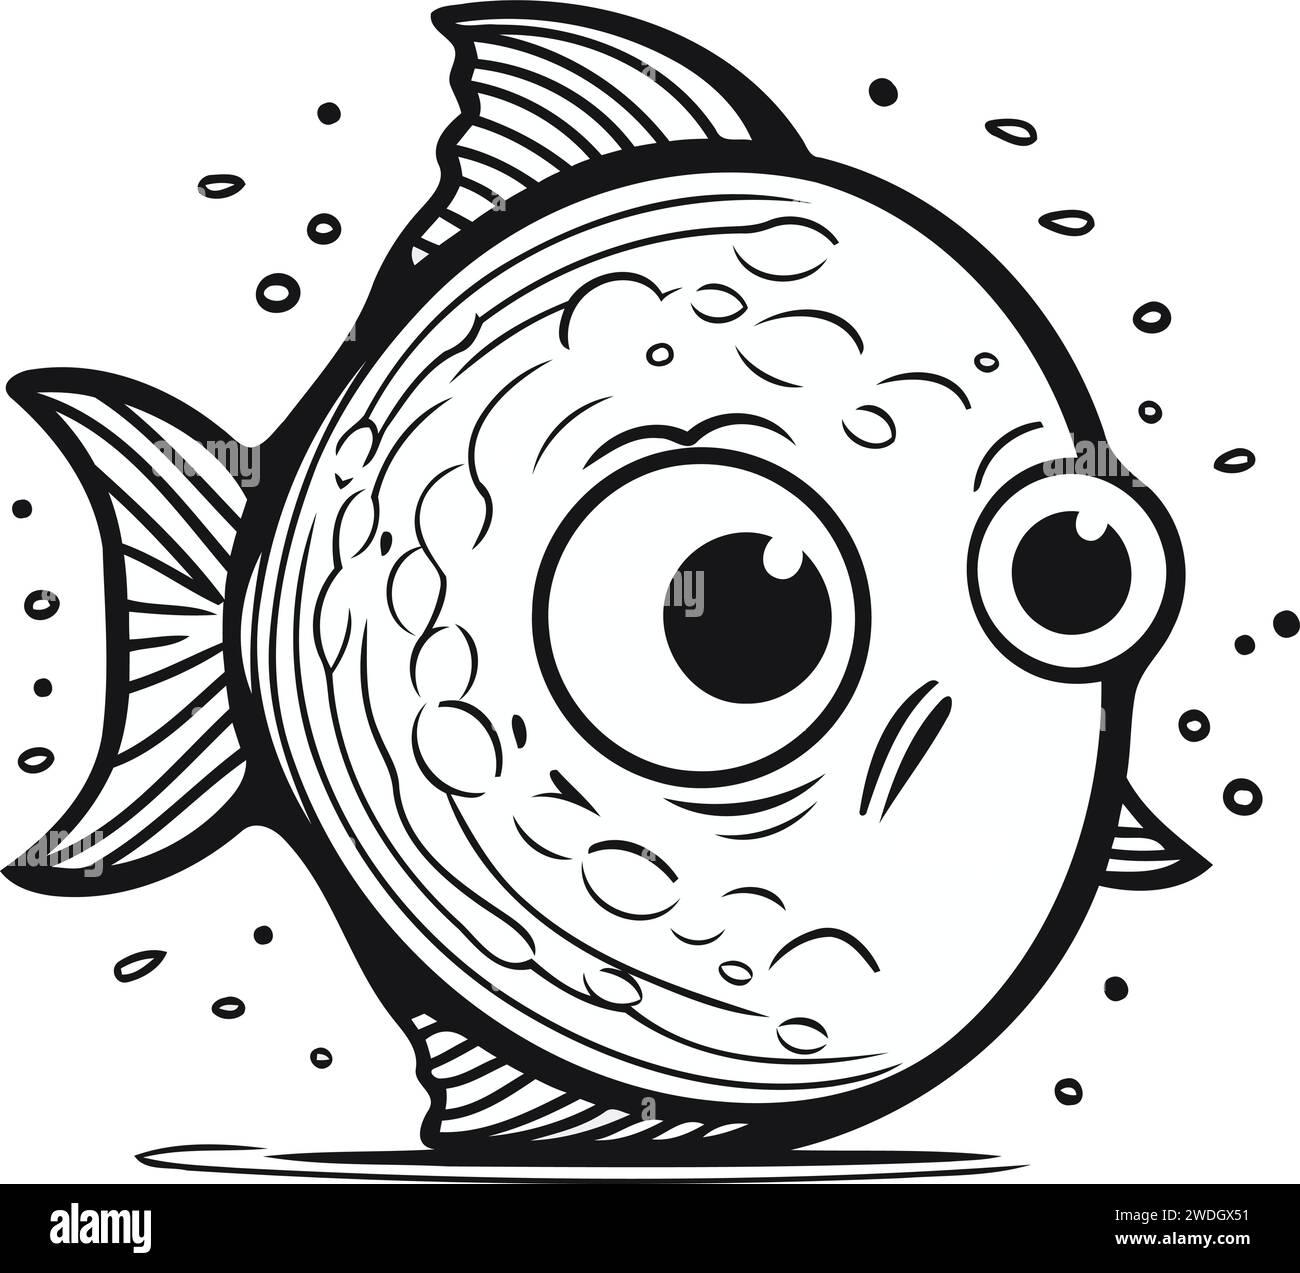 Illustration en noir et blanc d'un poisson drôle. Style dessin animé. Vecteur. Illustration de Vecteur